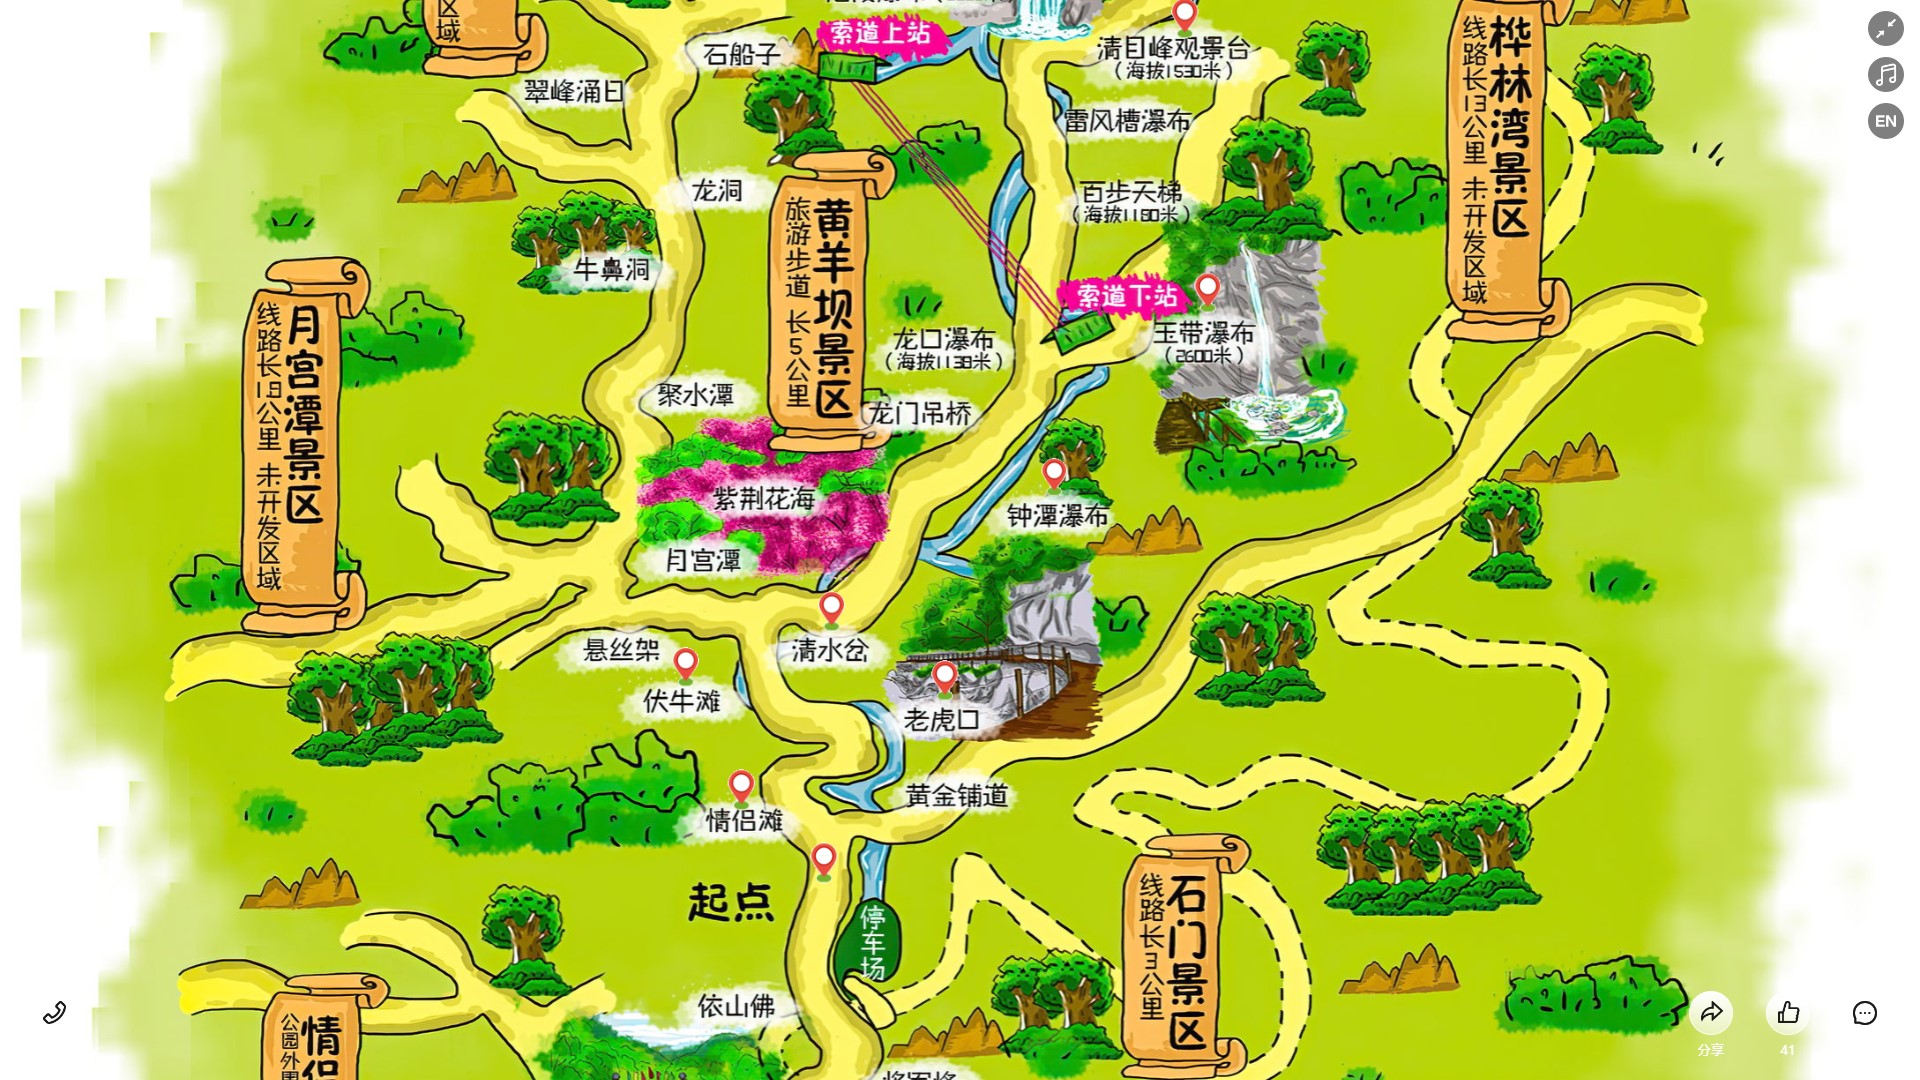 南林乡景区导览系统